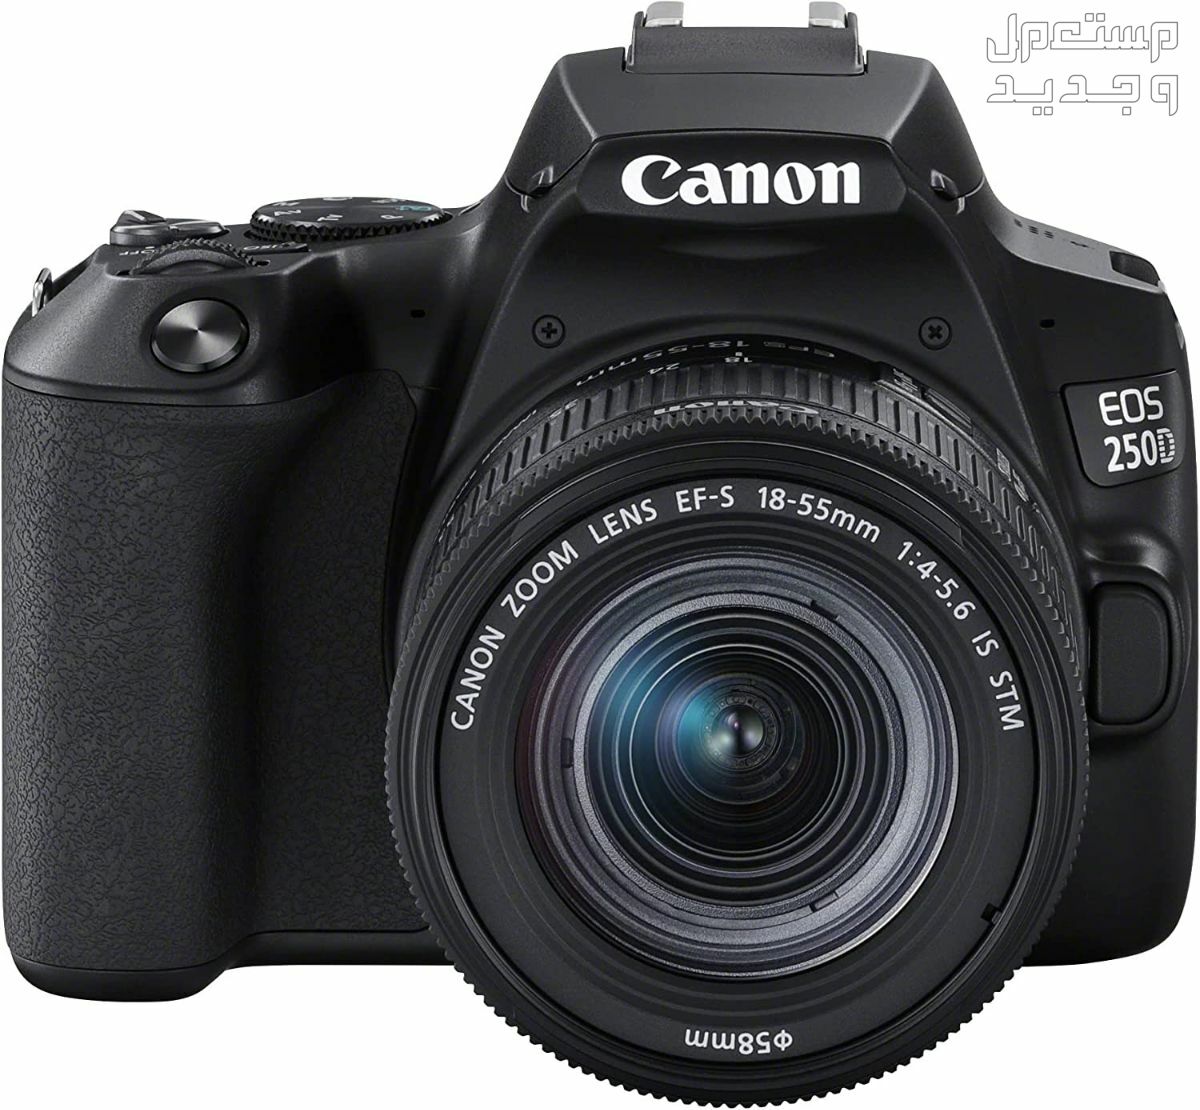 سعر ومميزات ومواصفات أرخص 5 كاميرات تصوير من كانون في السودان مميزات كاميرا Canon EOS 250D